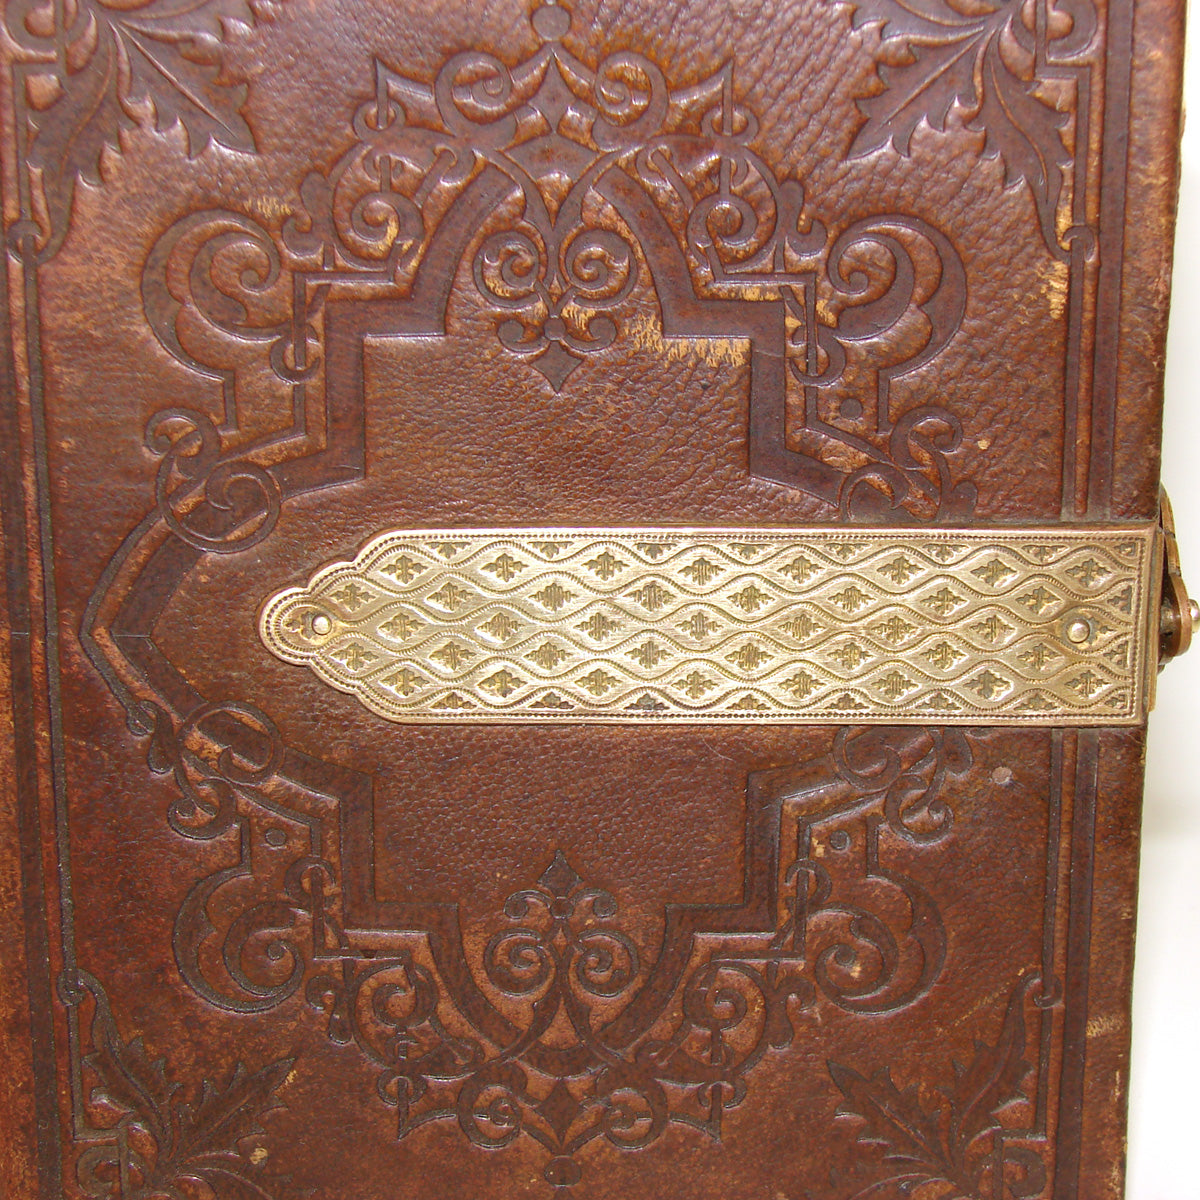 Antique Victorian Era Tooled Leather Carte d’Visite or Photo Album, Bronze Strap Clasp